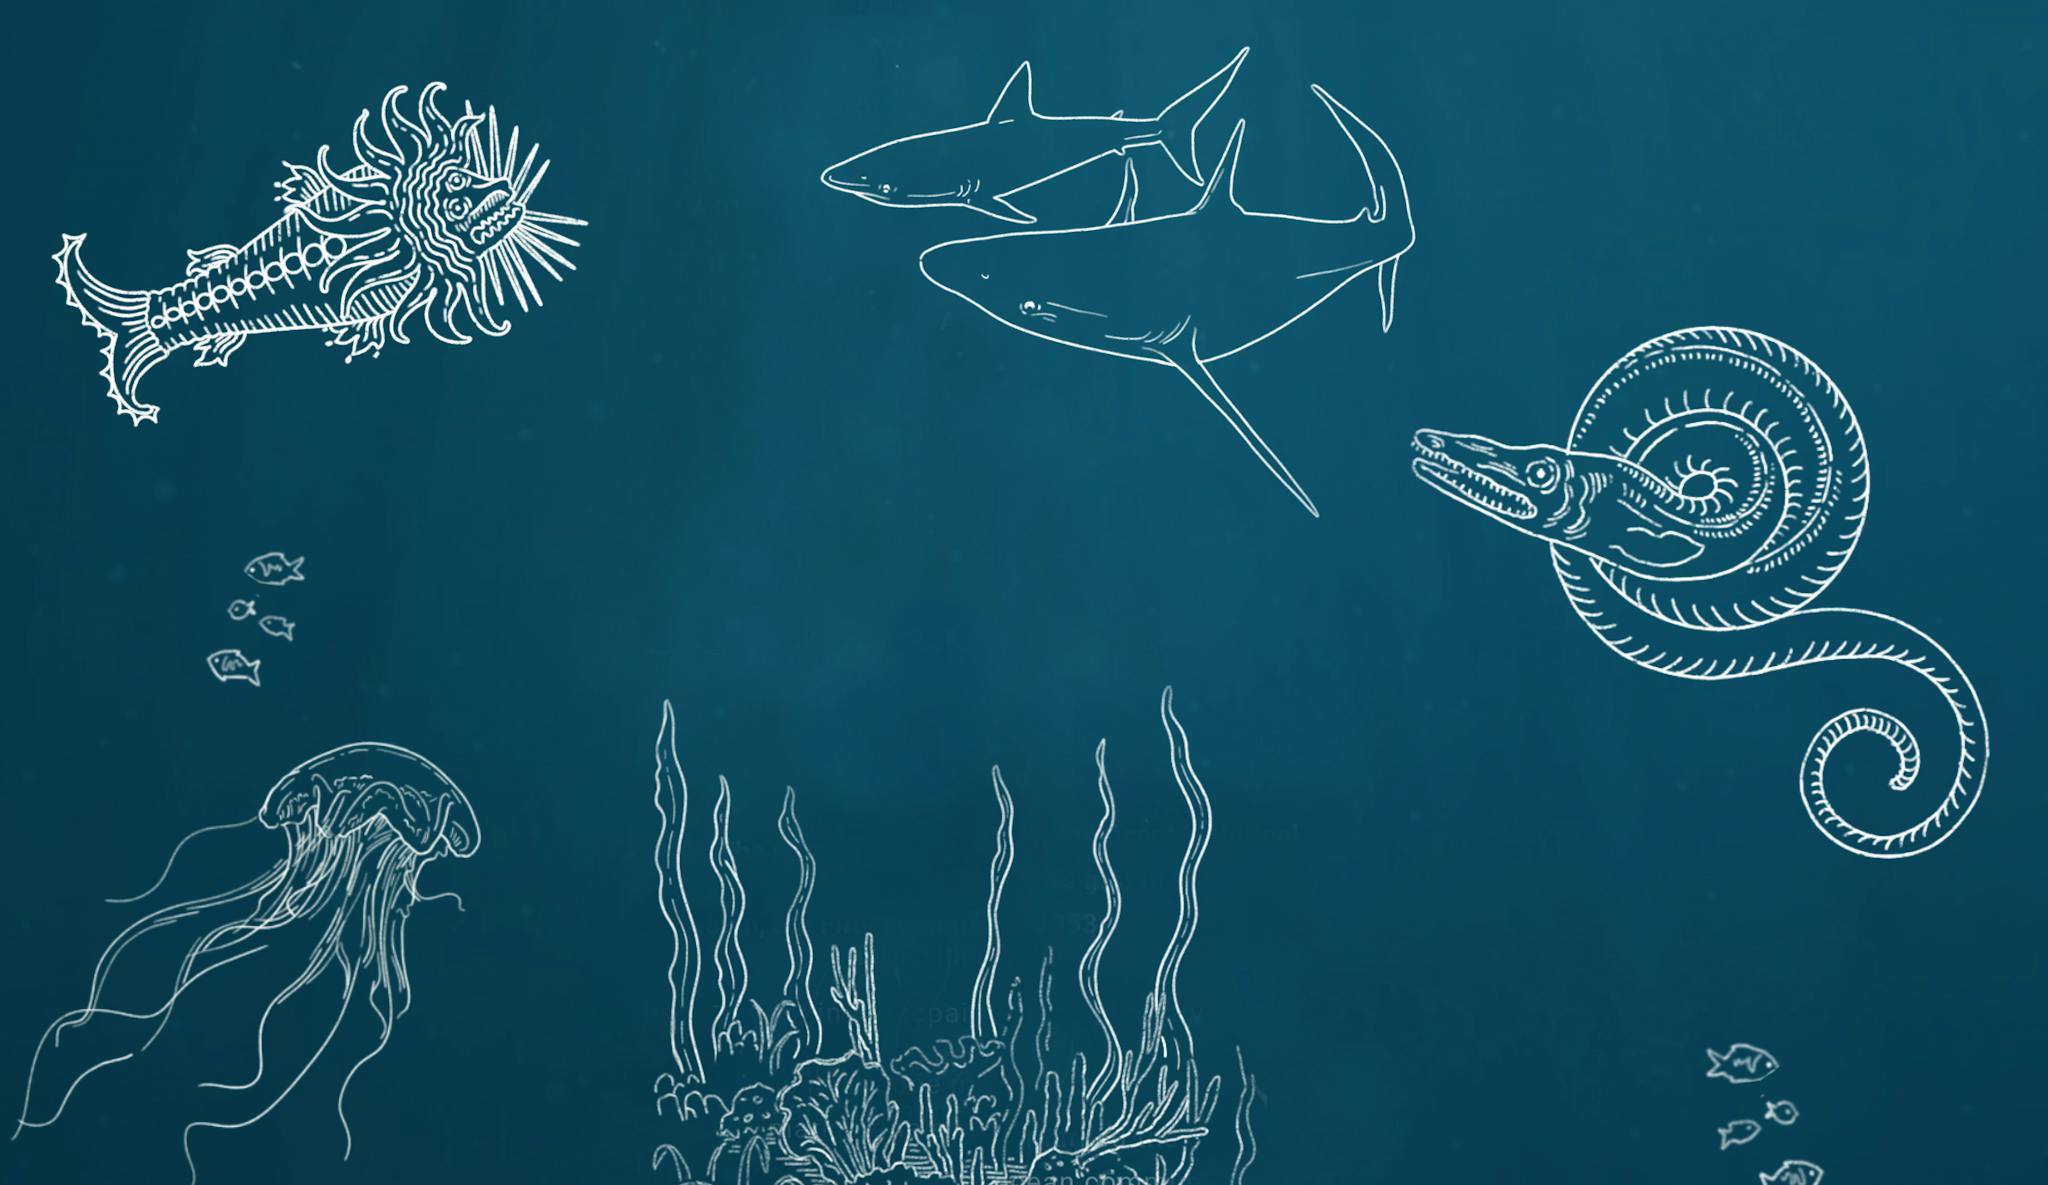 Fond marin bleu avec des illustrations au trait blanc de requin, de méduse, de monstre marin et d'algues